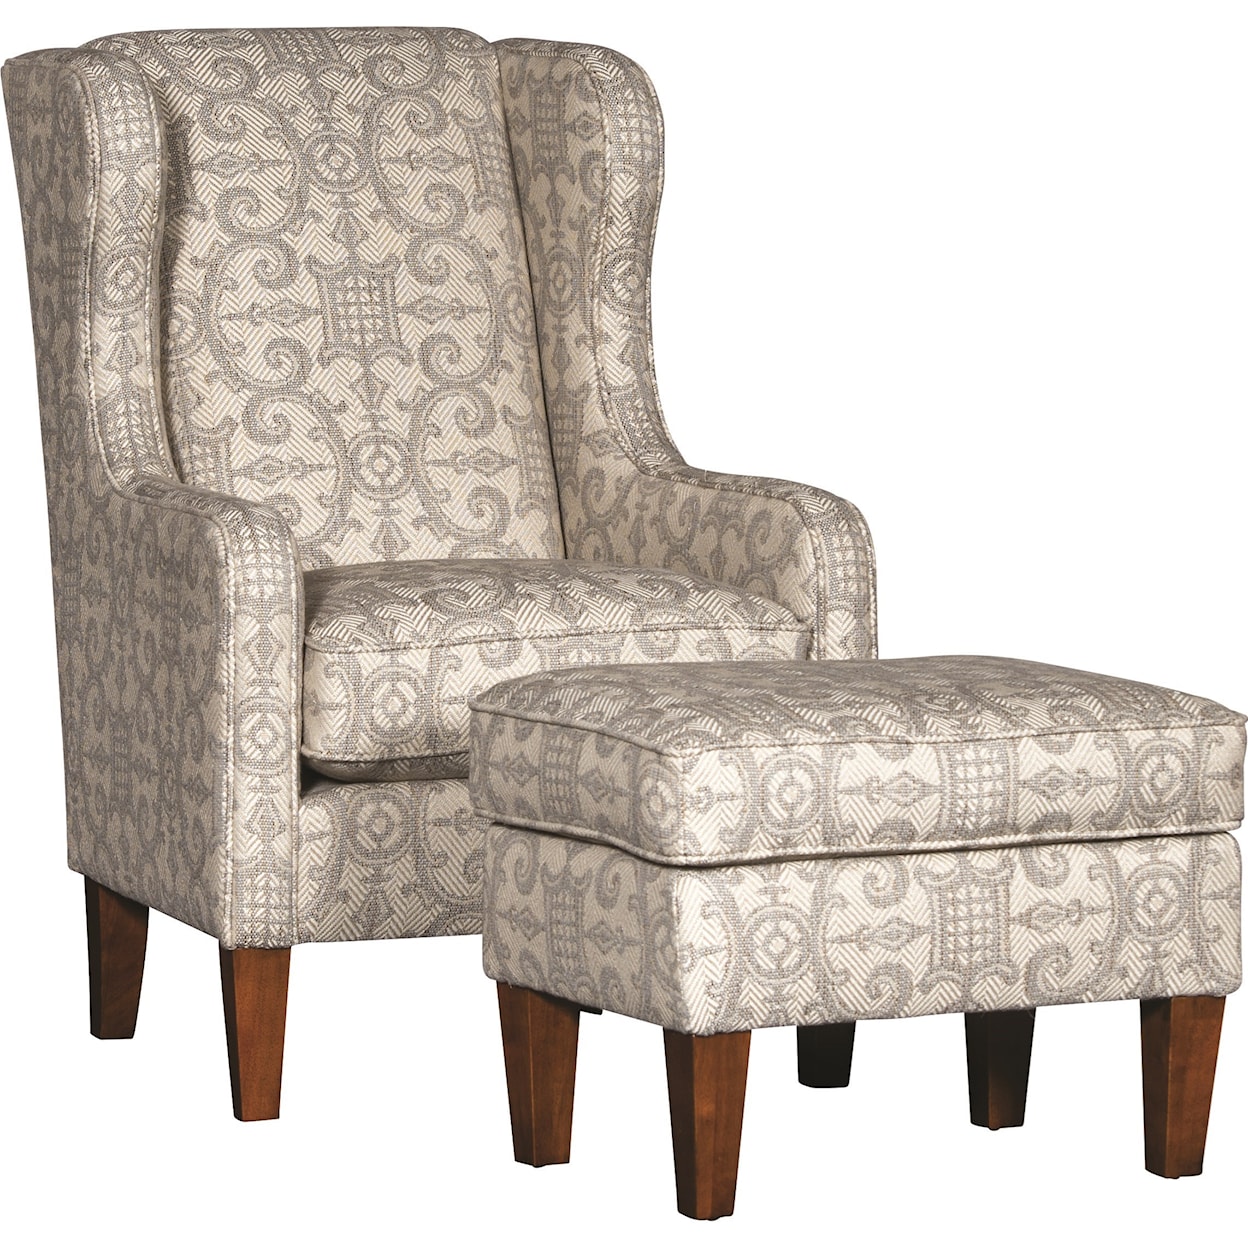 Mayo 5520 Chair and Ottoman